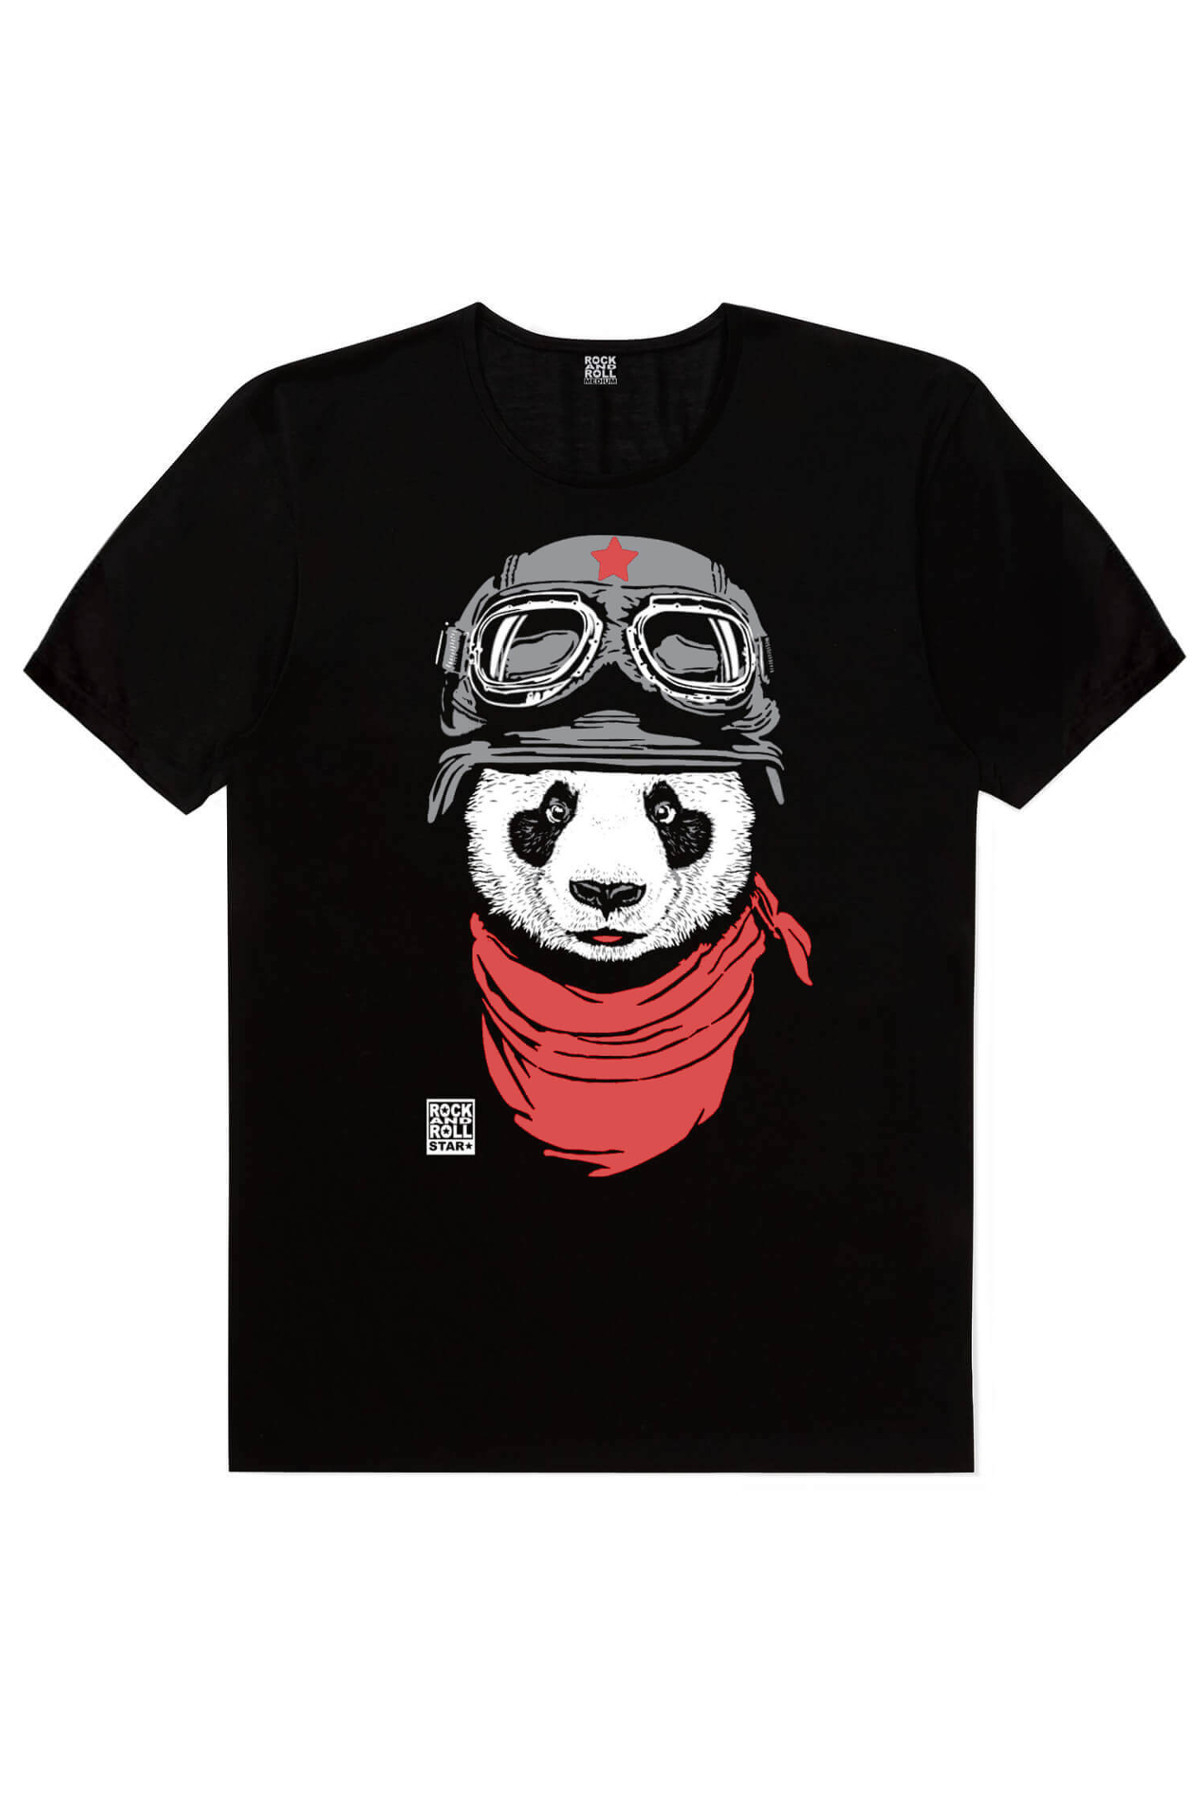 Bandanalı Panda, Satürnde Panda, Uzi Tabancalı Panda Erkek 3'lü Eko Paket T-shirt